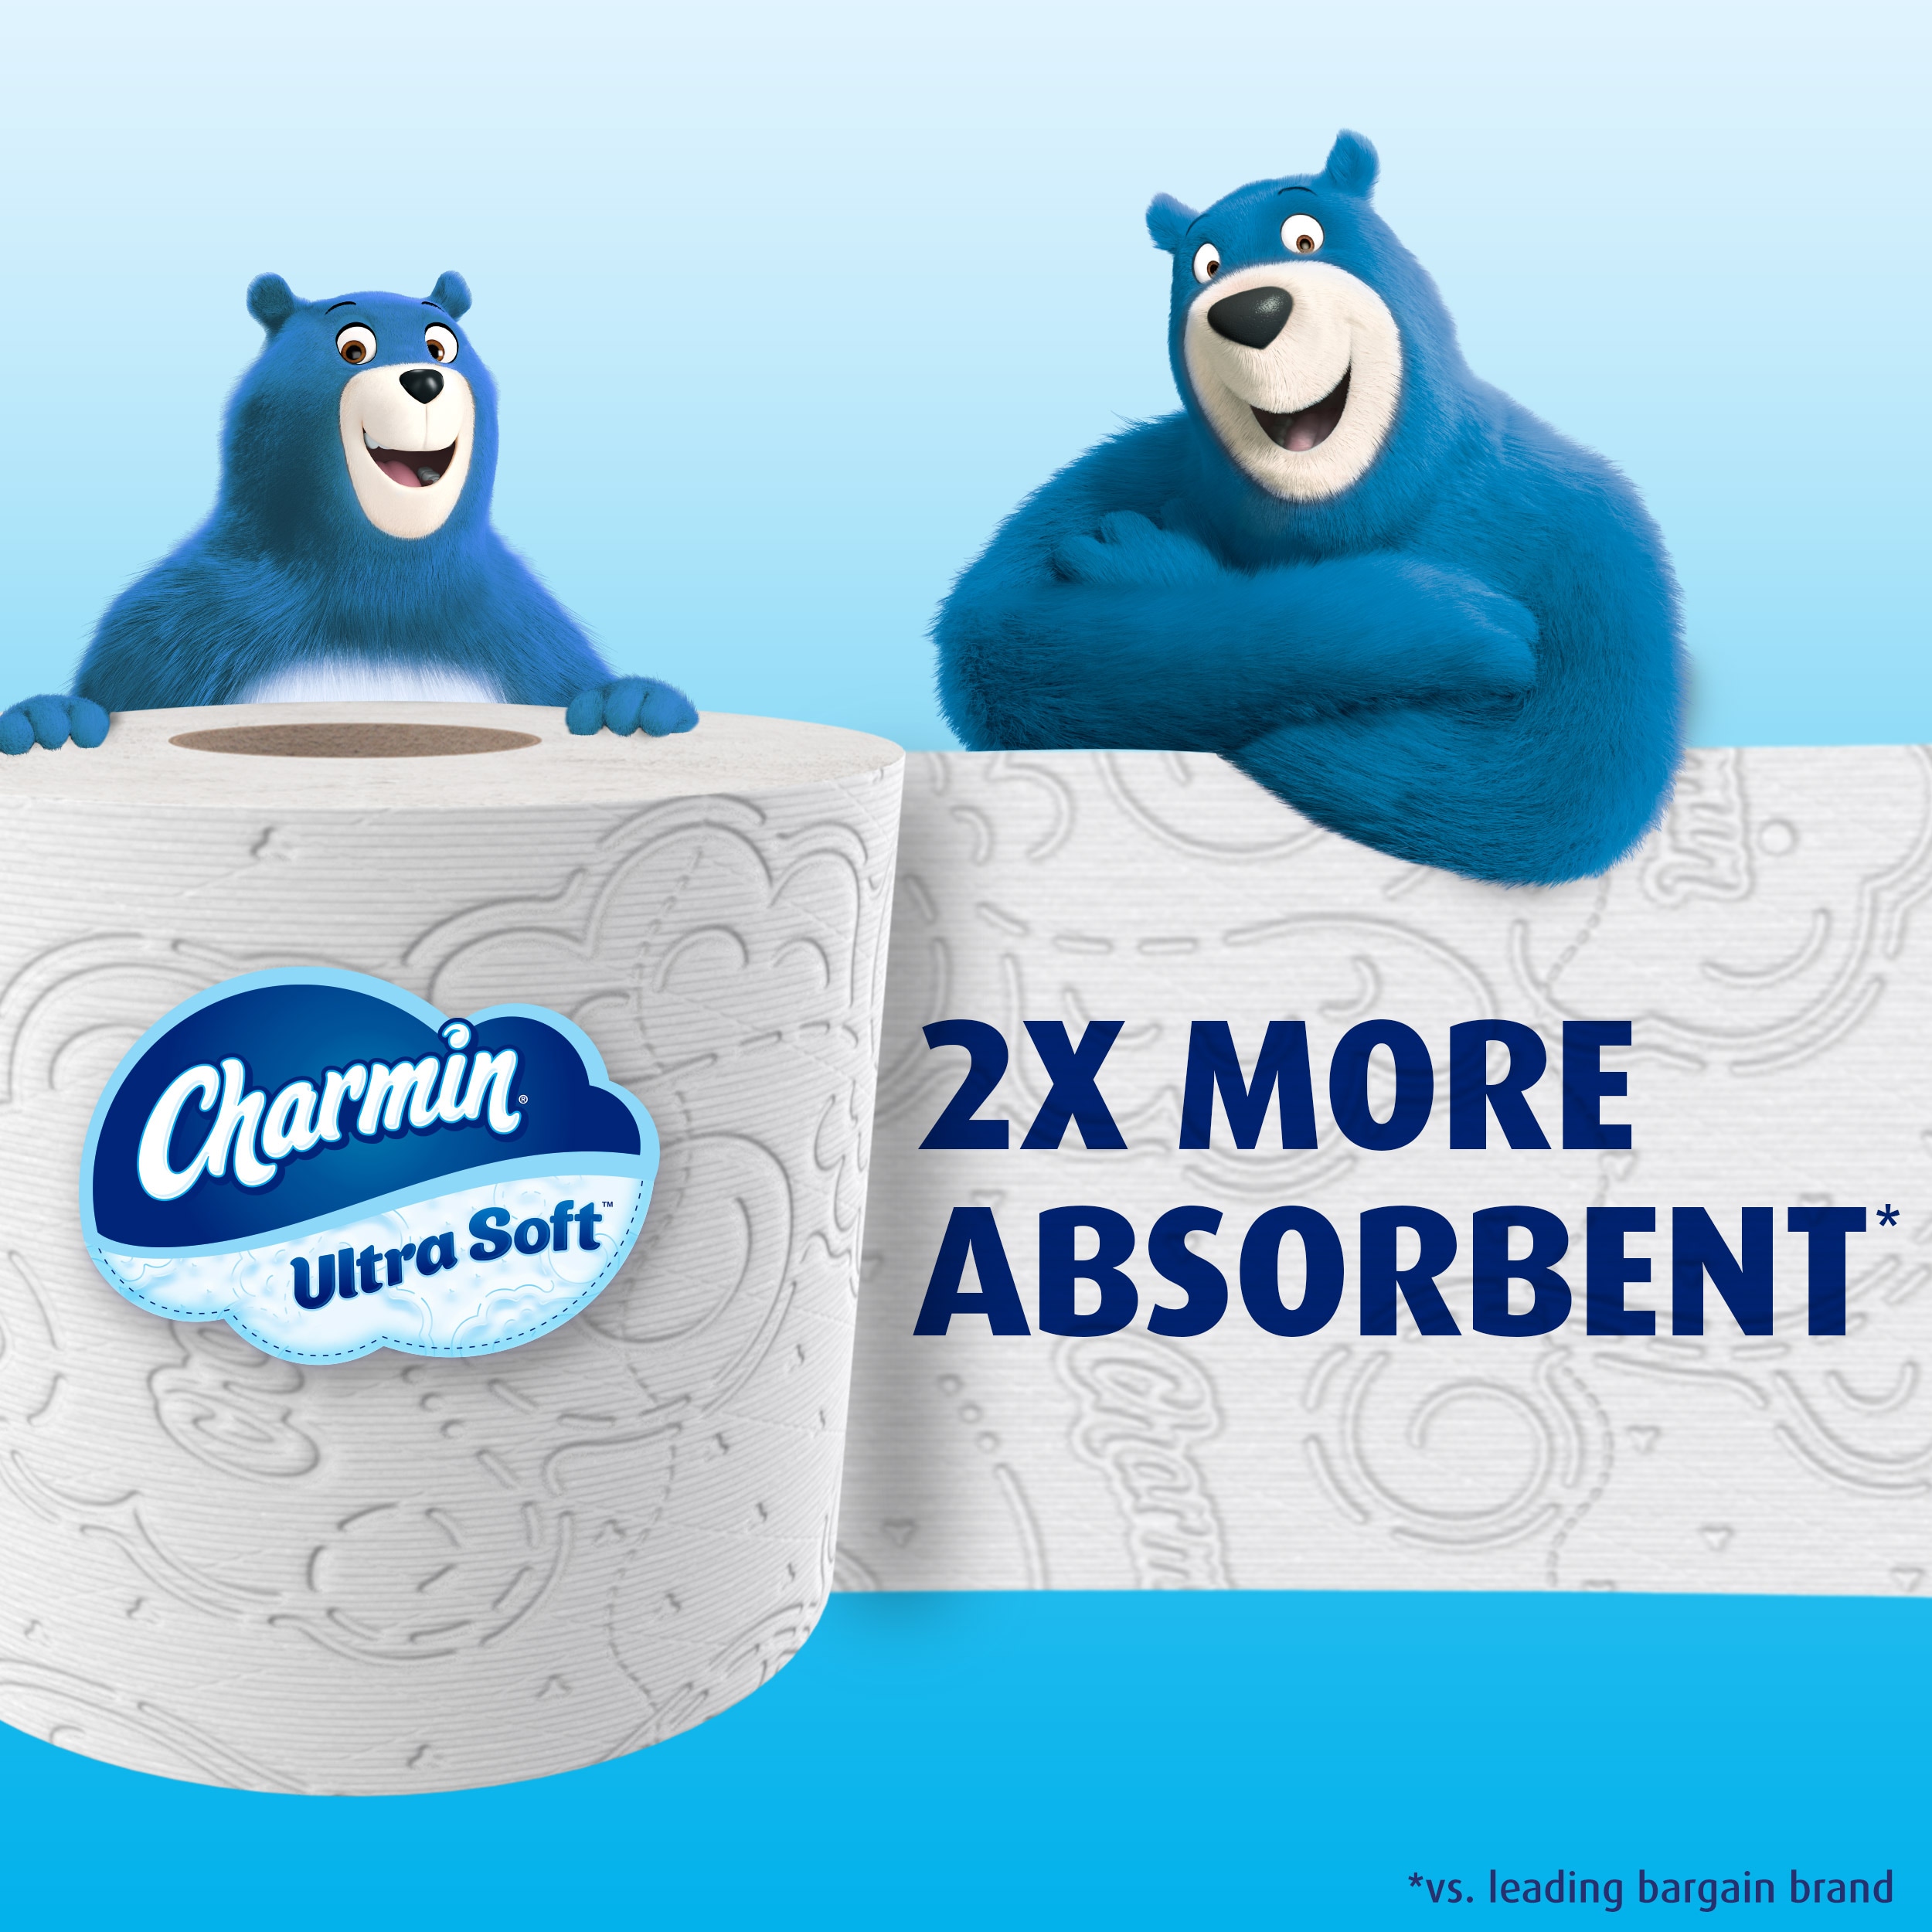 Charmin Ultra Soft Toilet Paper 12 Super Mega Rolls, 366 Sheets Per Roll